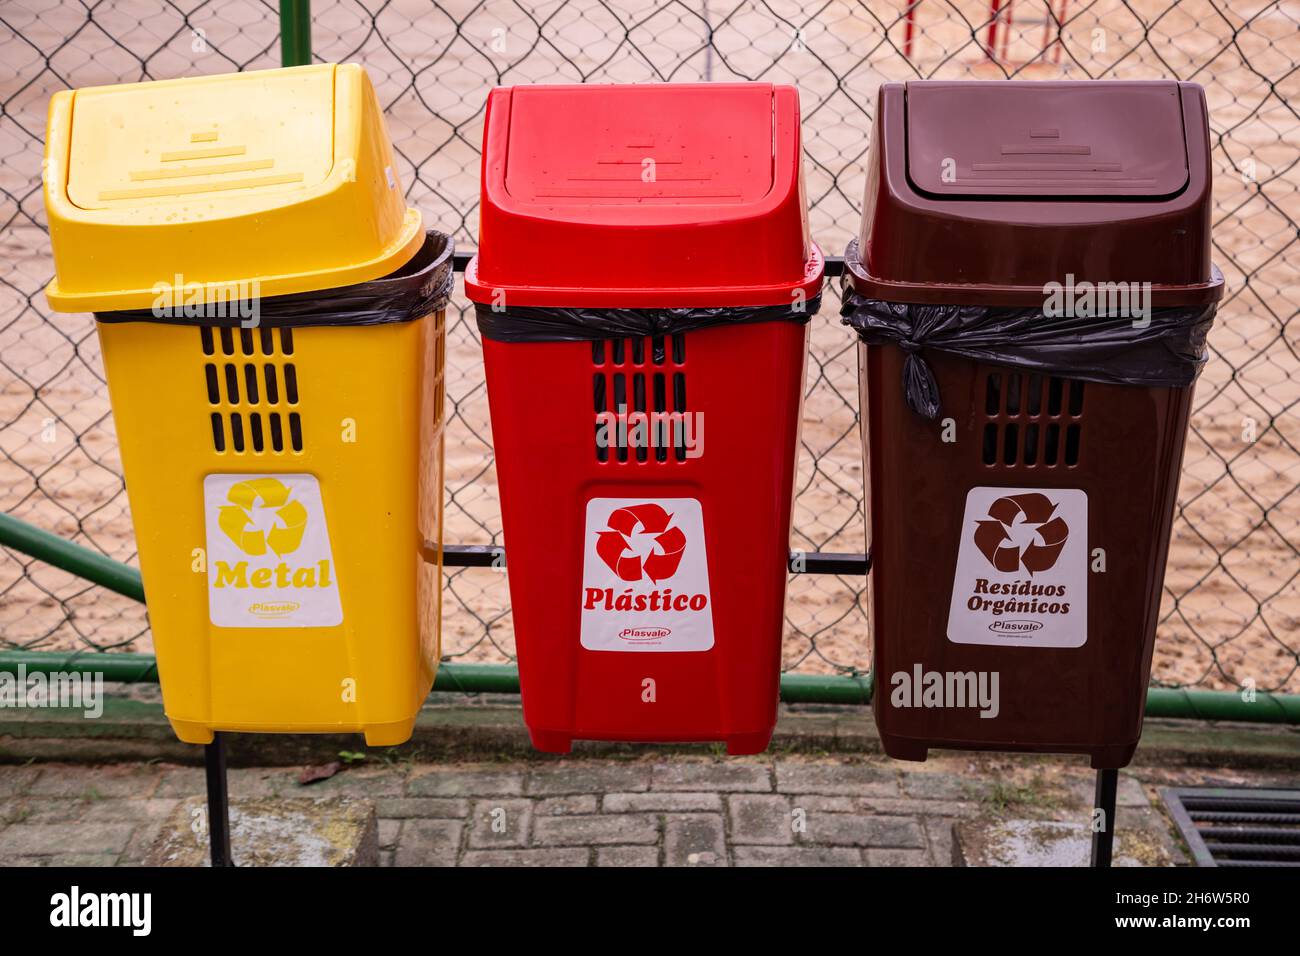 Goias, Brésil – 13 novembre 2021 : bacs colorés pour collecte et recyclage séparés.Bacs de différentes couleurs pour la collection de mater de recyclage Banque D'Images